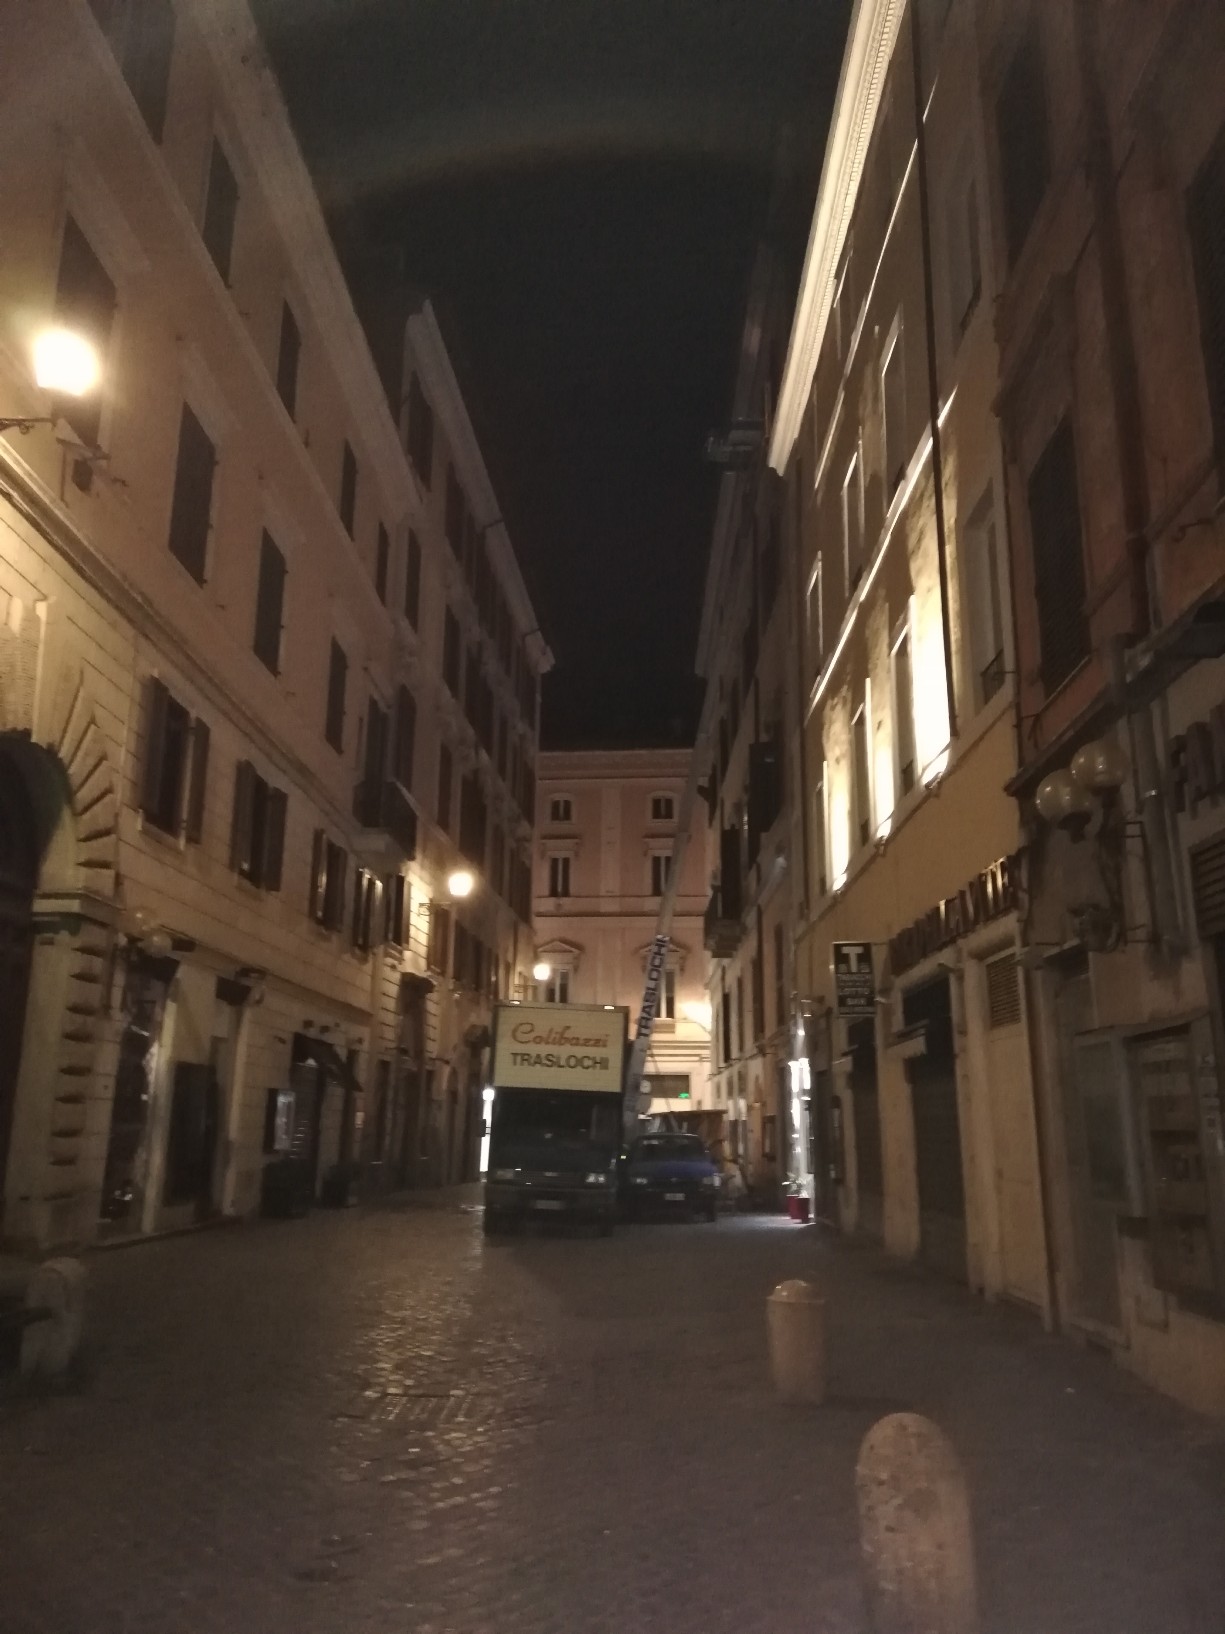 uffici traslochi roma centro storico di notte